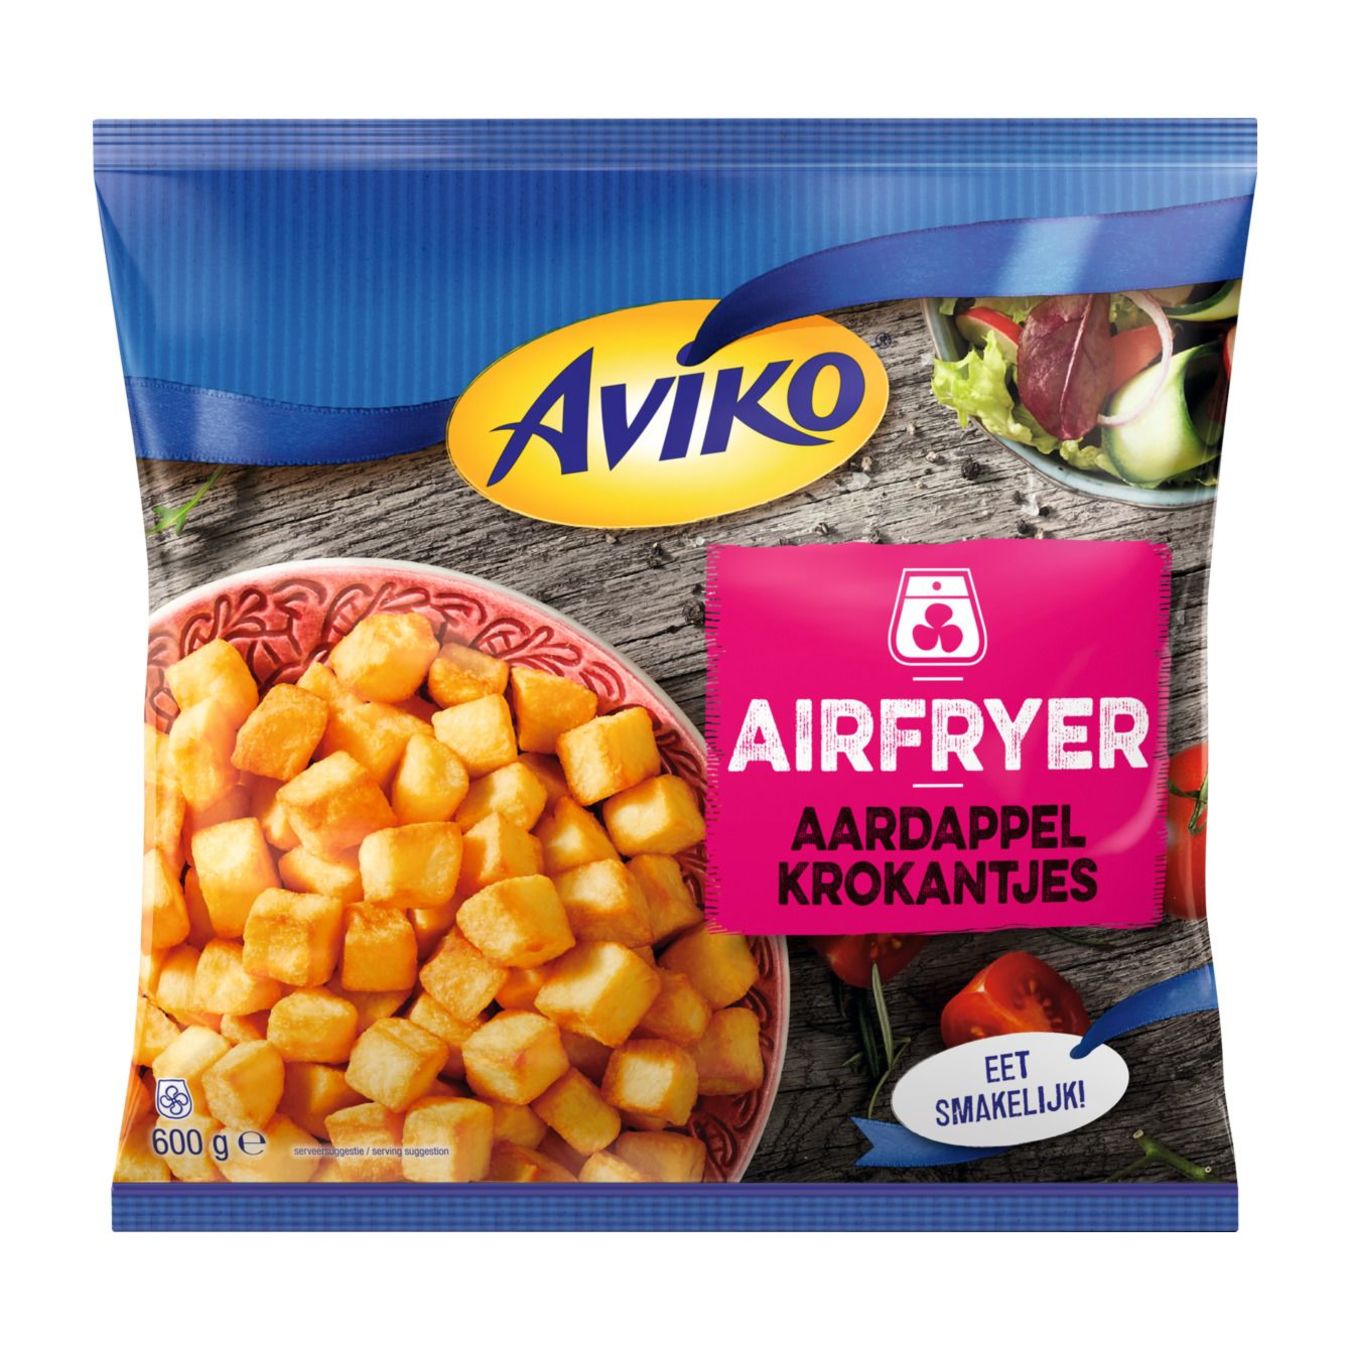 Aviko Airfryer aardappelkrokantjes